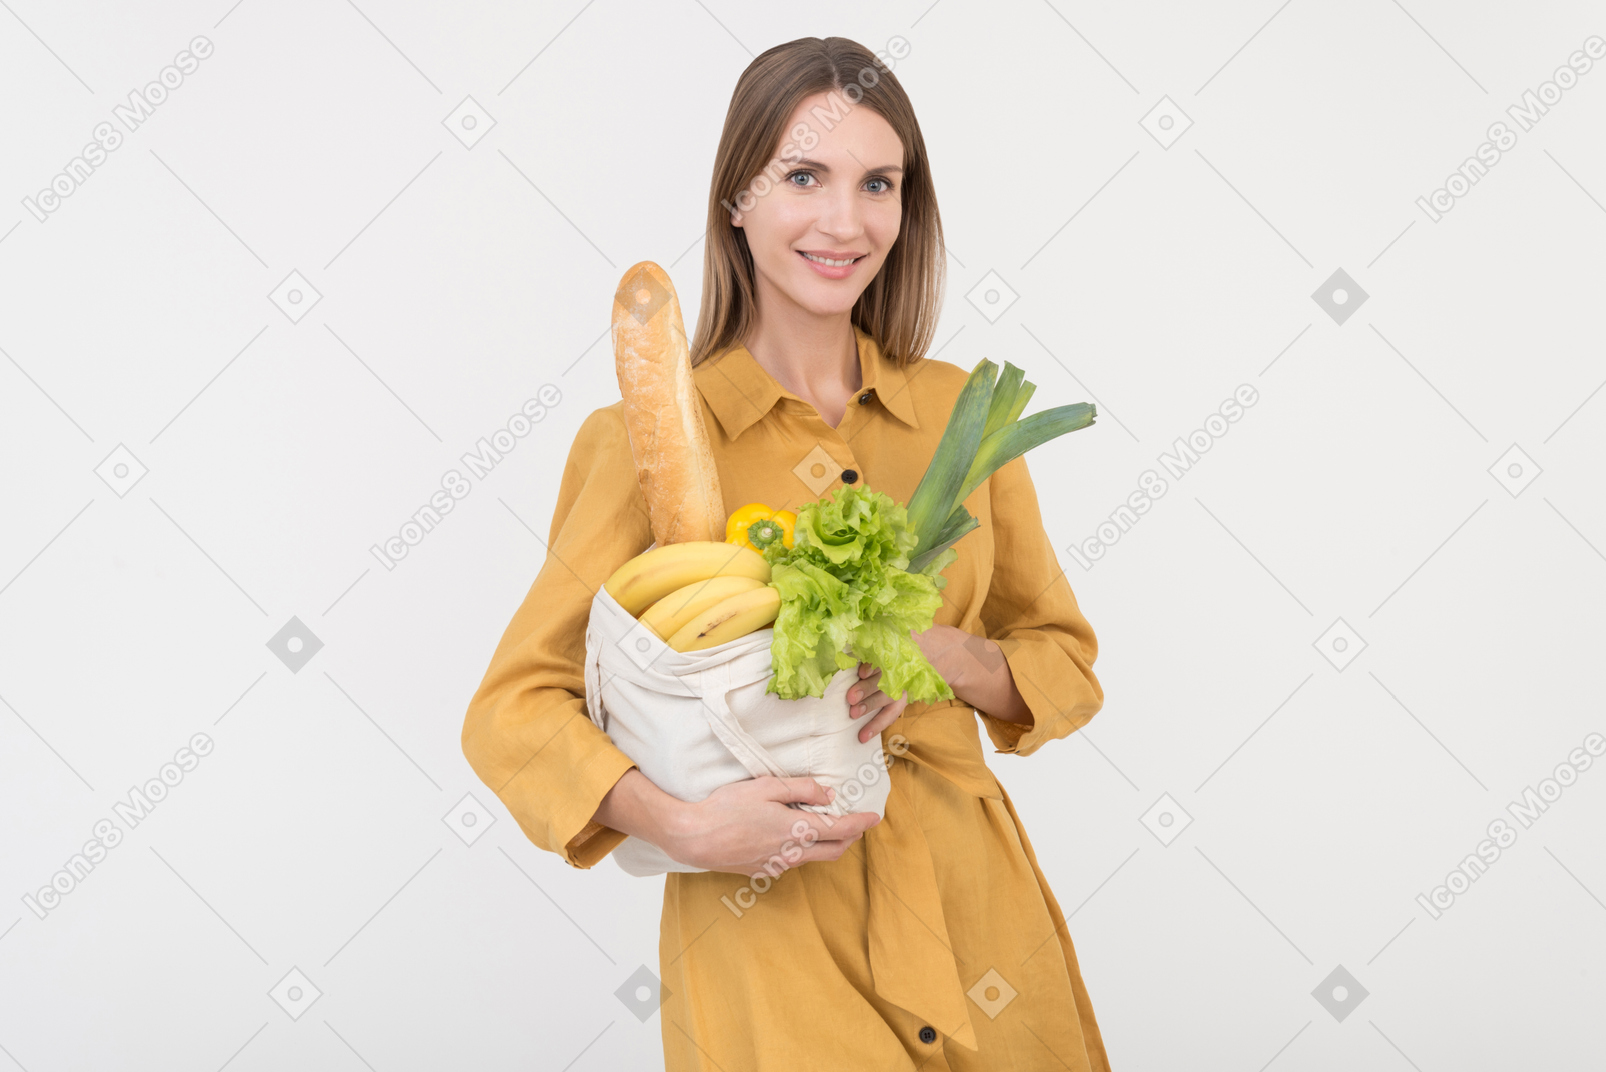 野菜とレウザベルの買い物袋を保持している若い女性